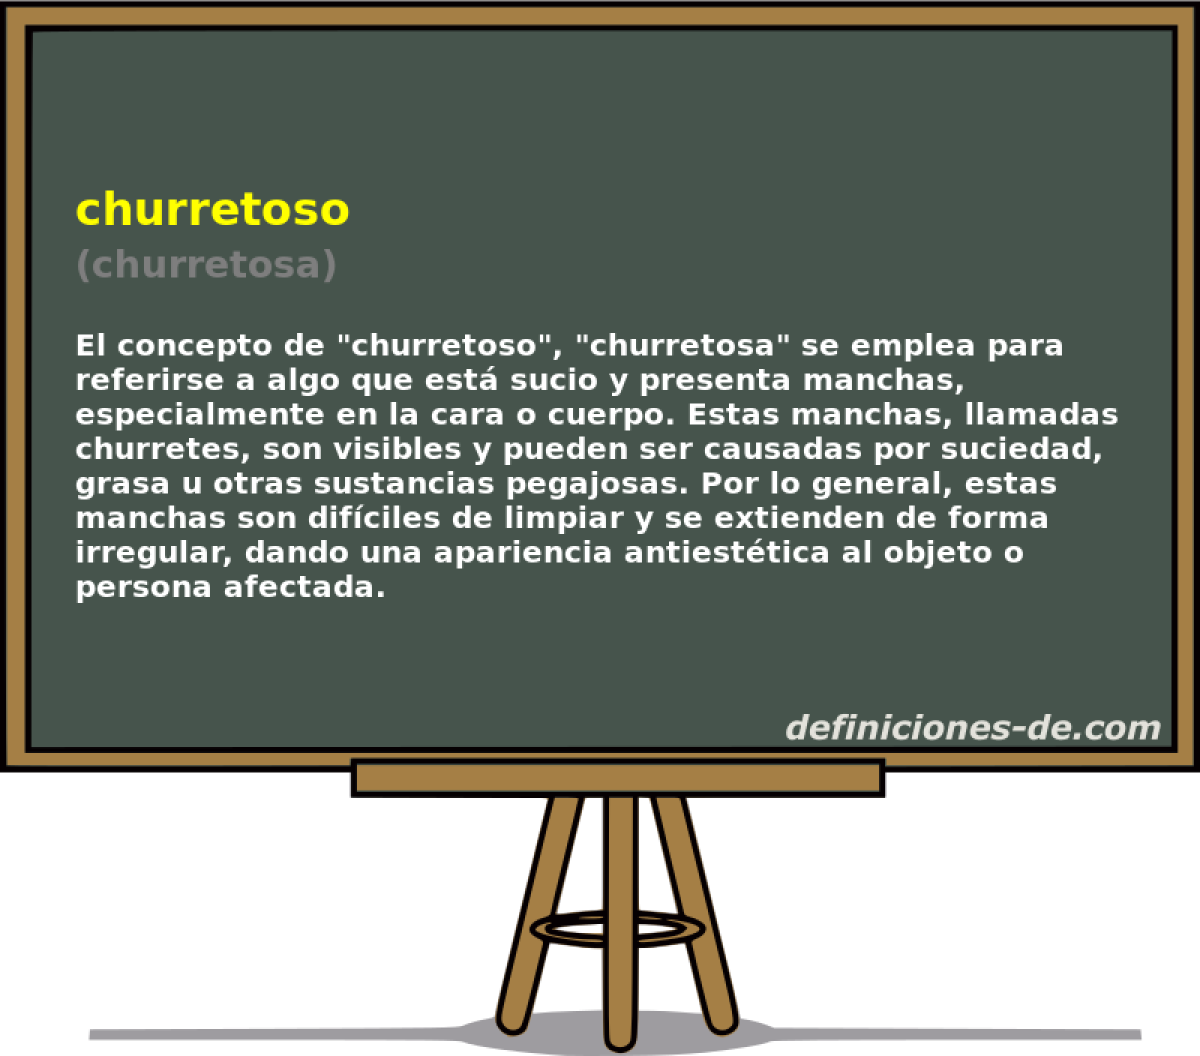 churretoso (churretosa)